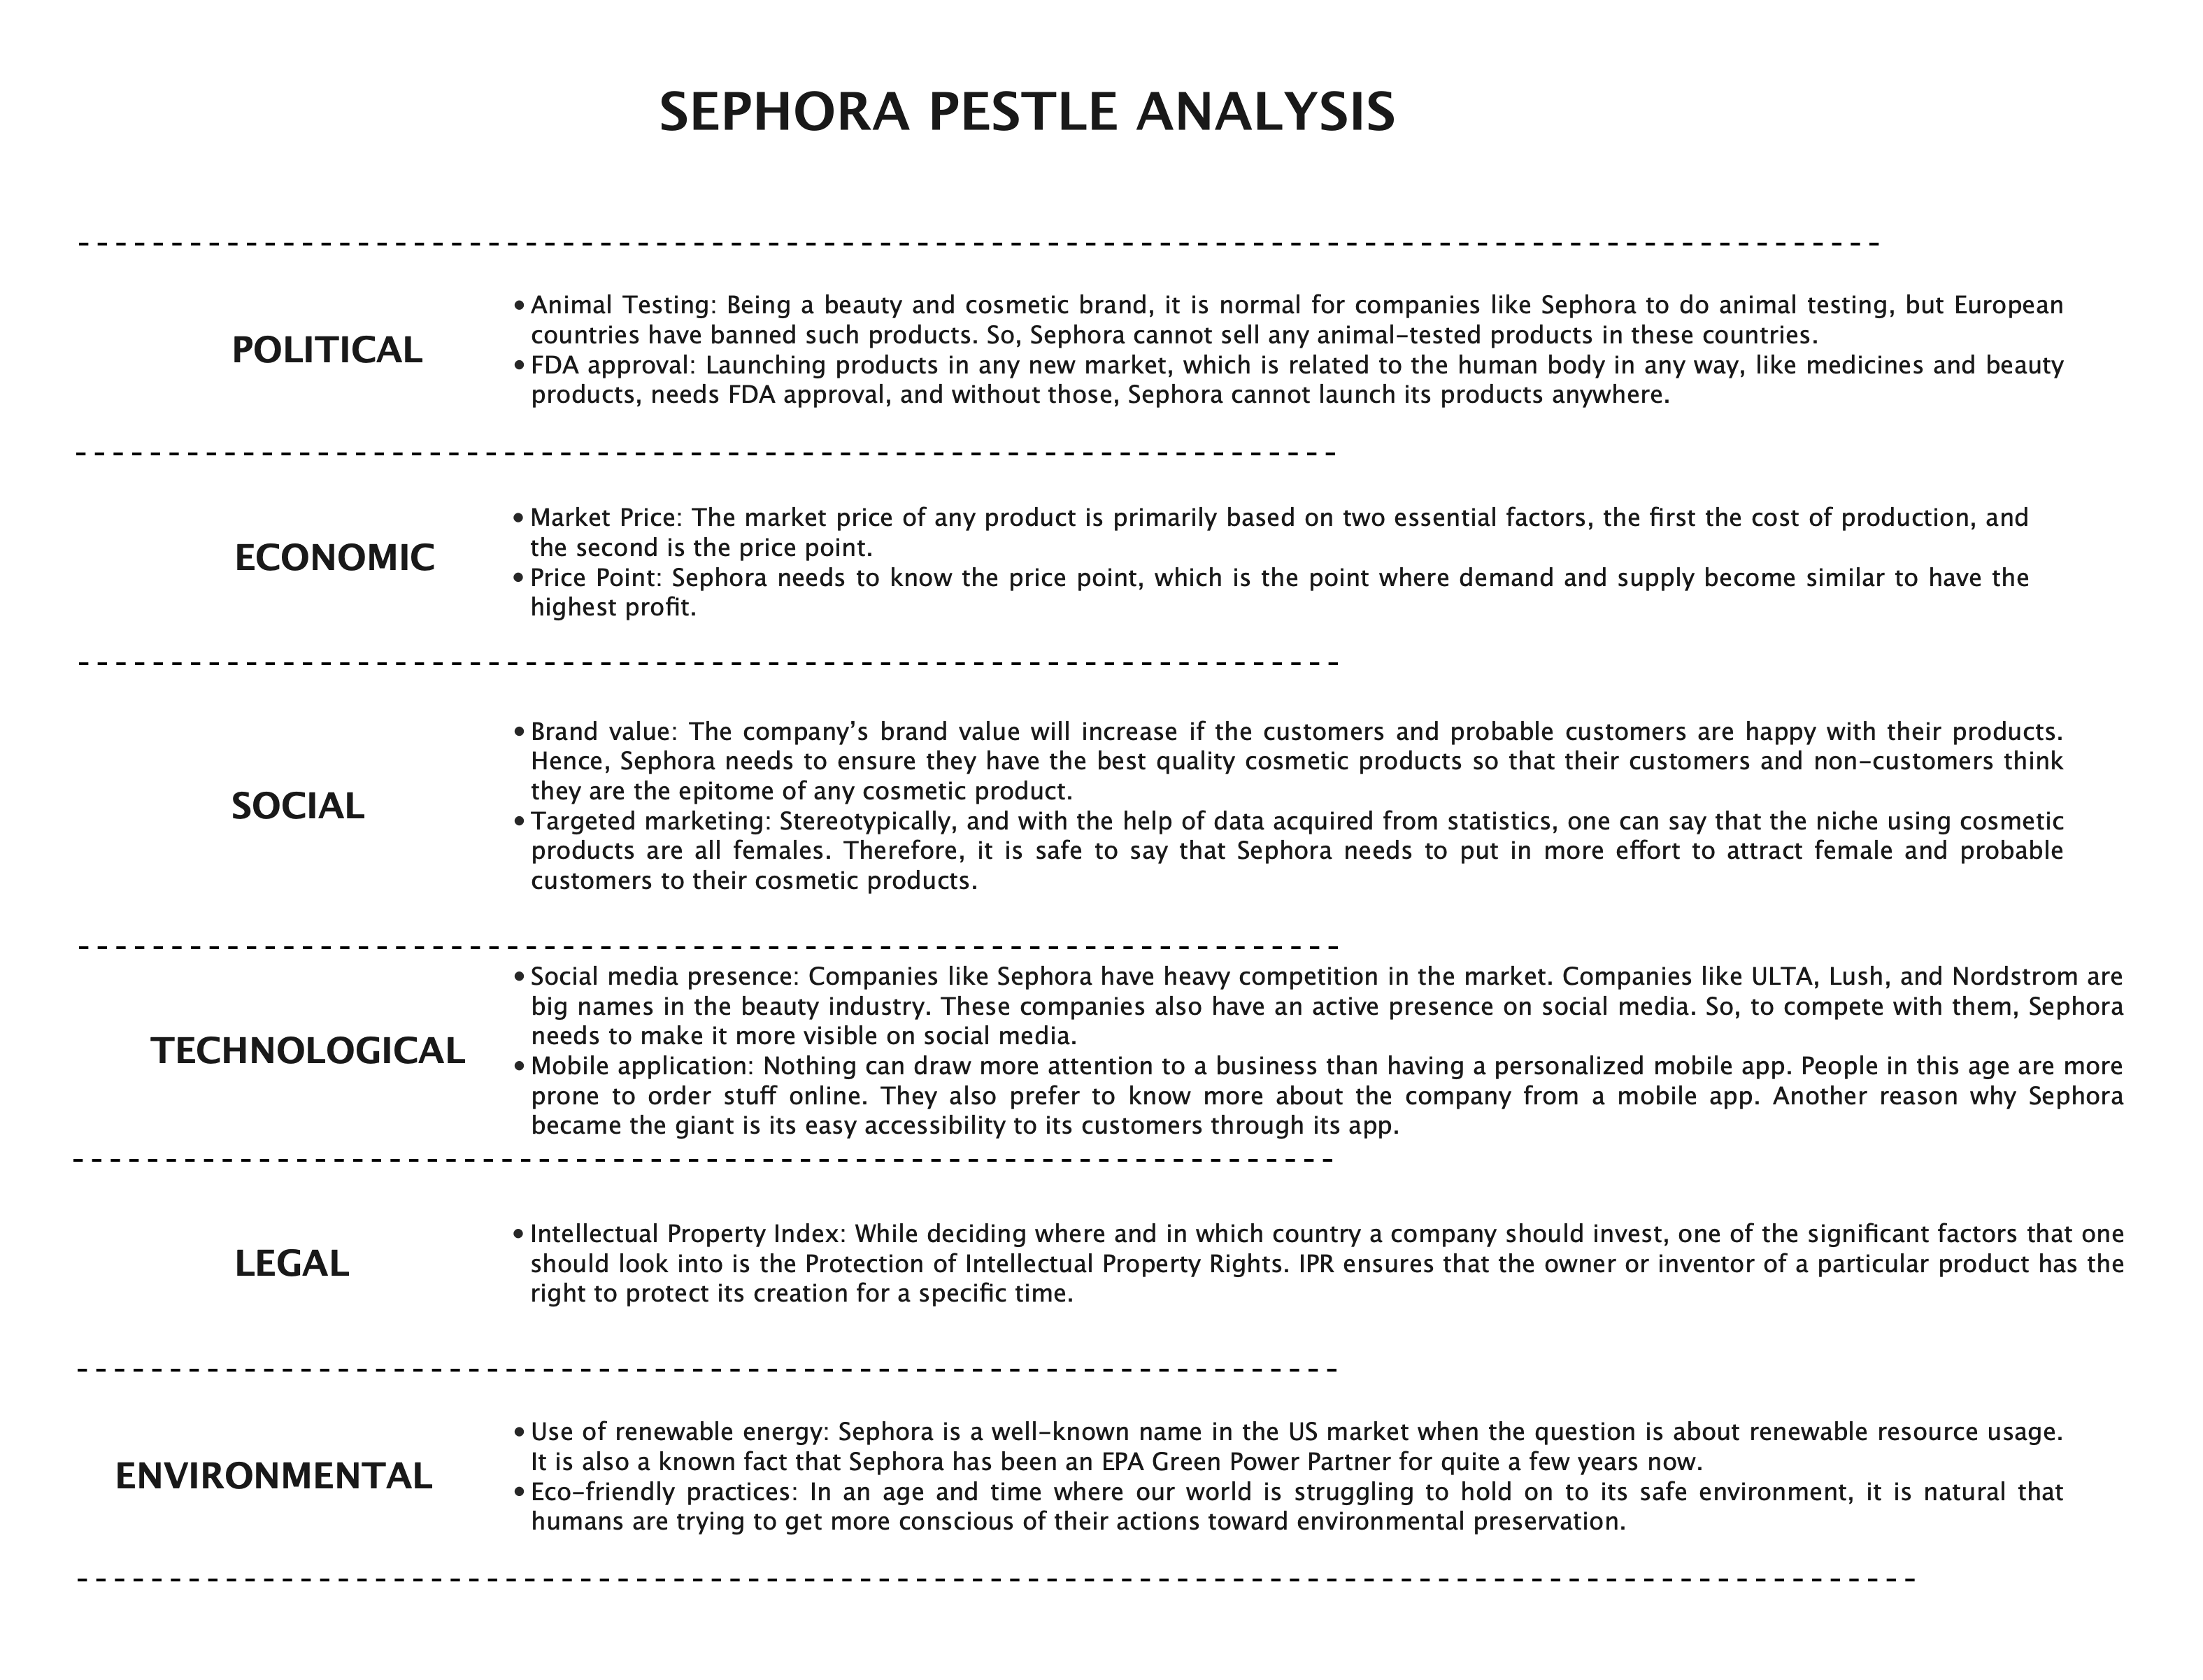 Sephora PESTEL Analysis